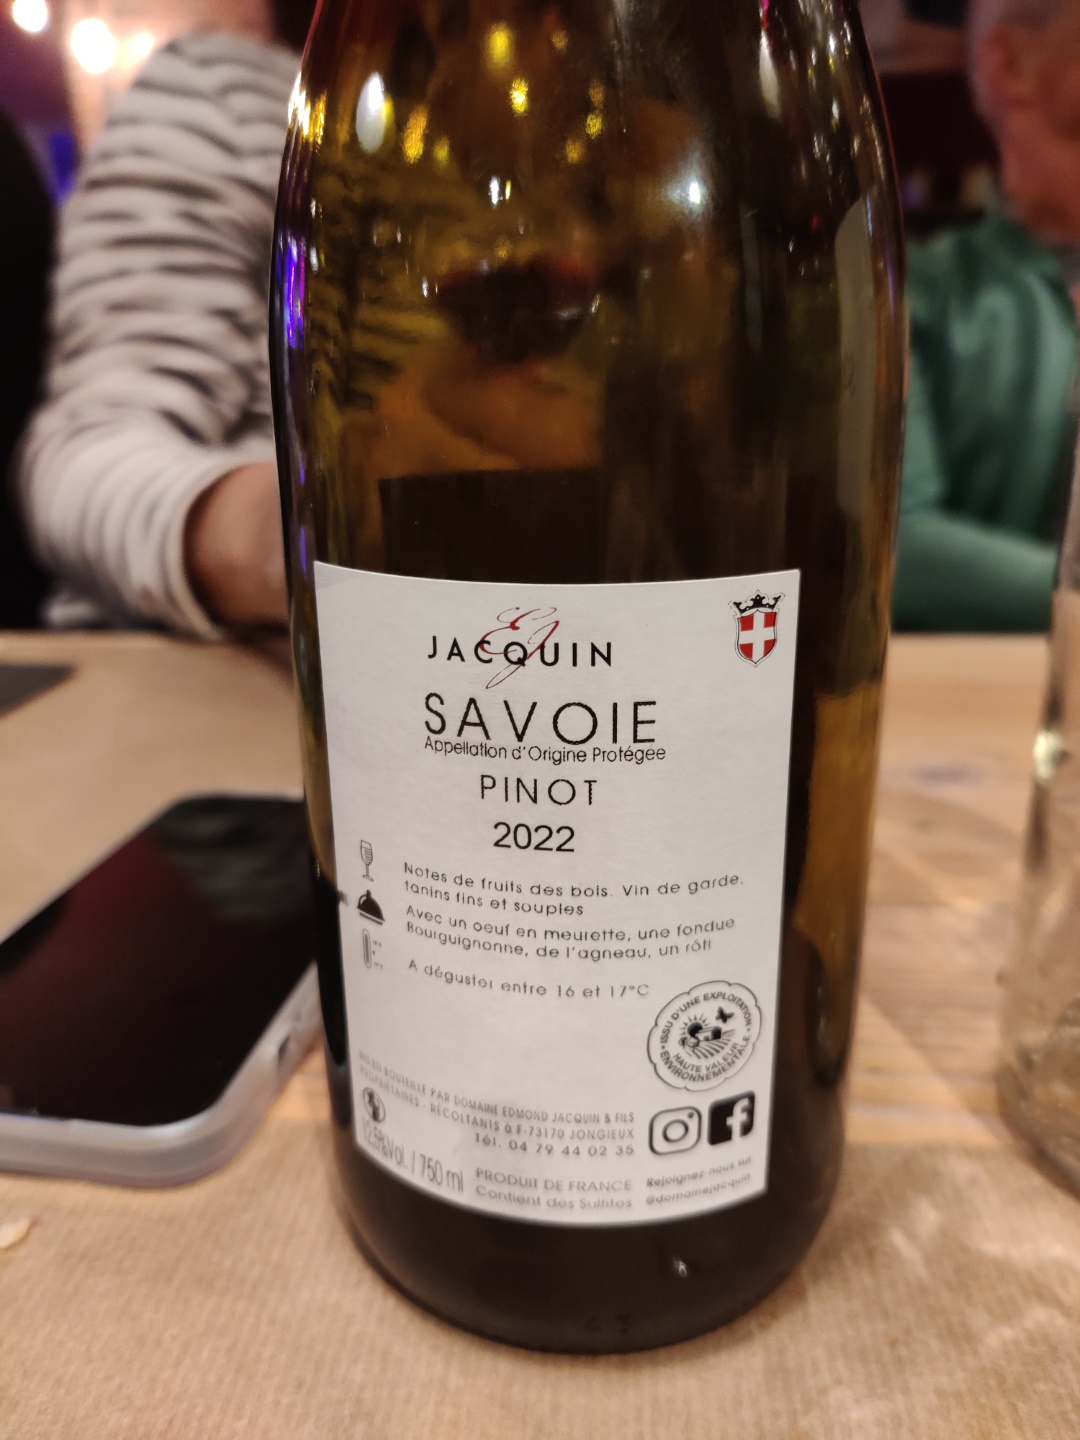 Nice Savoi wine